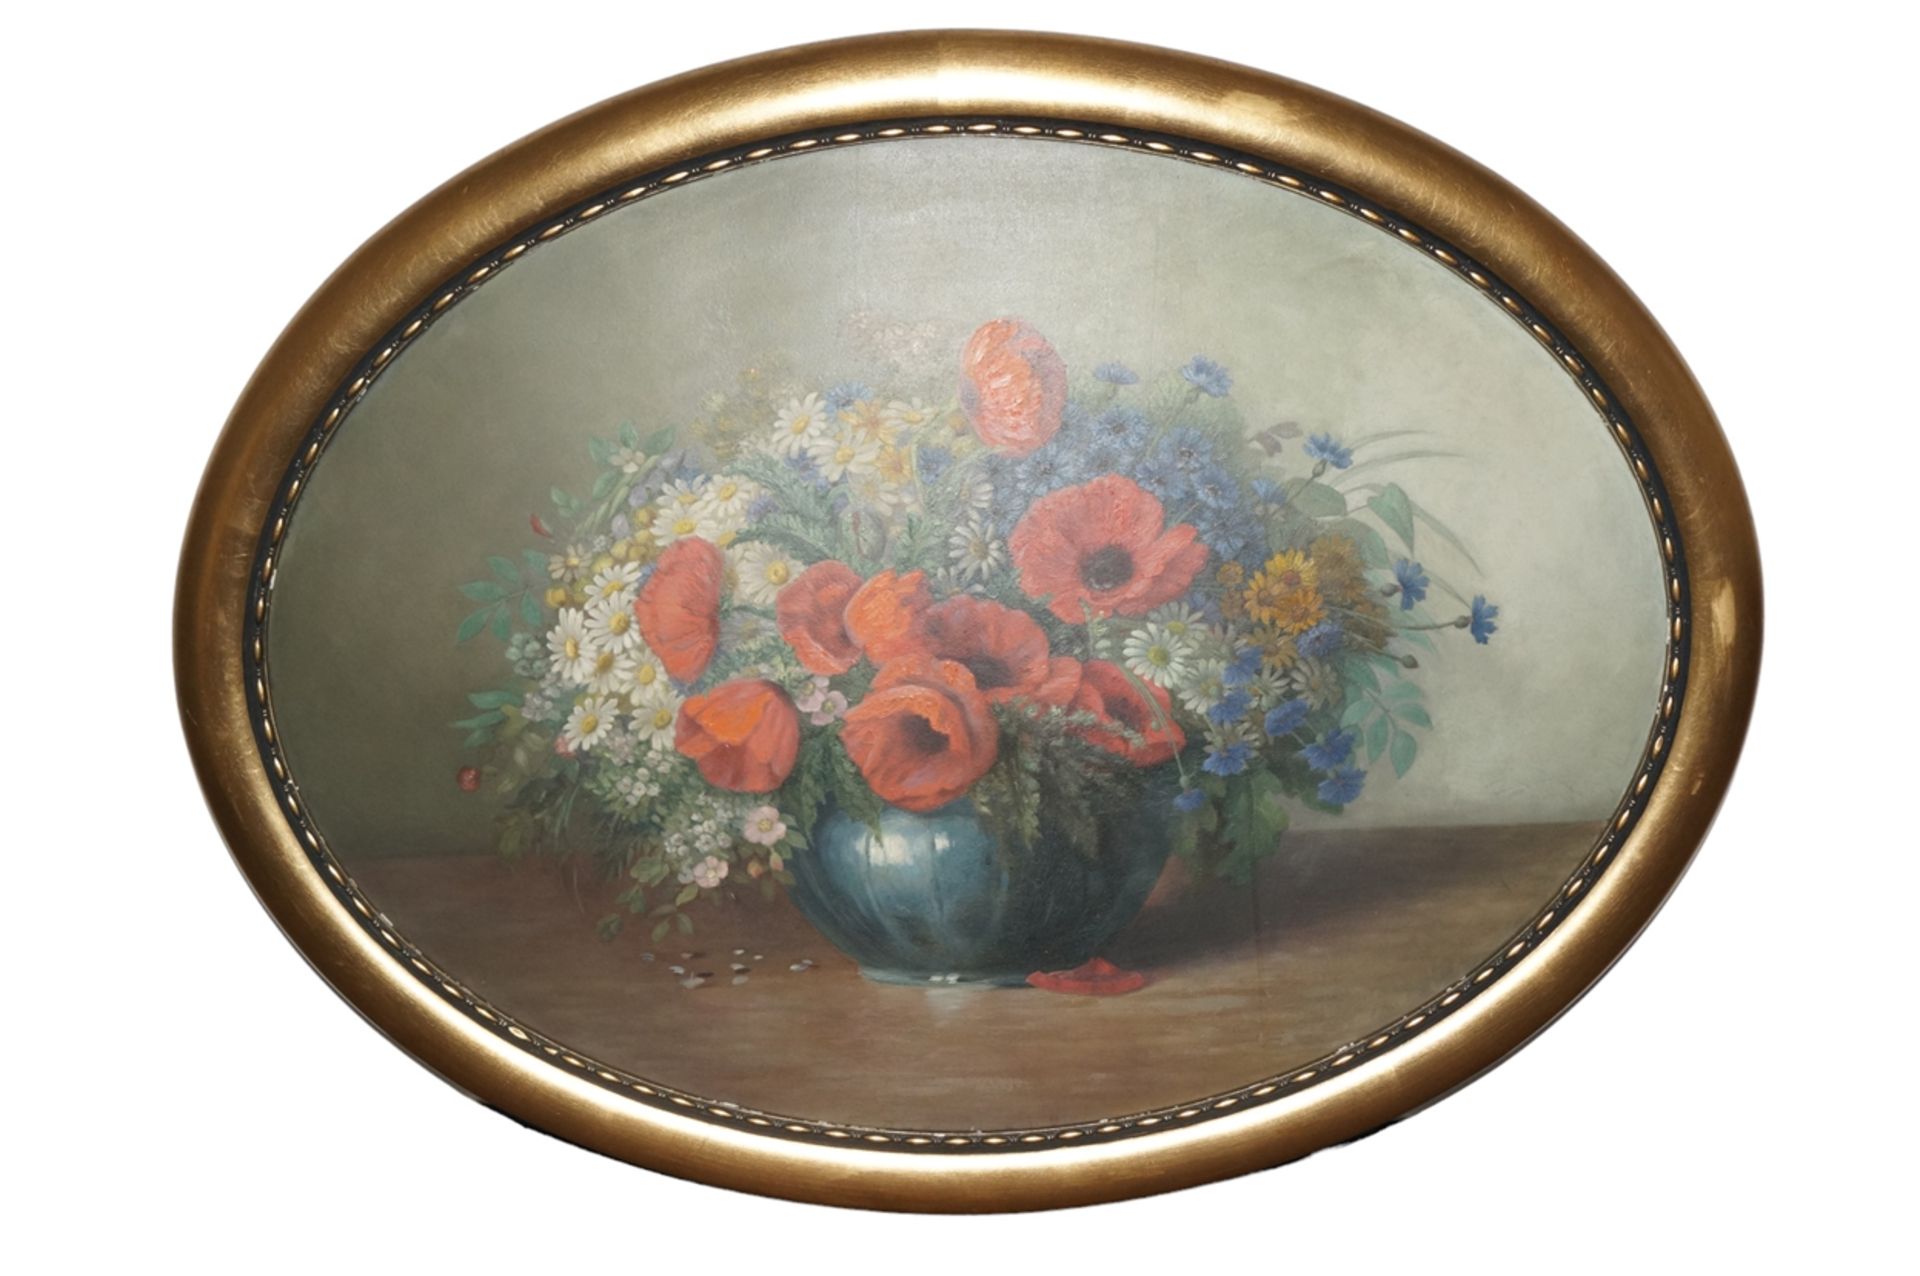 Klassisches Blumenstillleben mit Darstellung verschiedener Wiesenblumen in einer bauchigen Vase; da